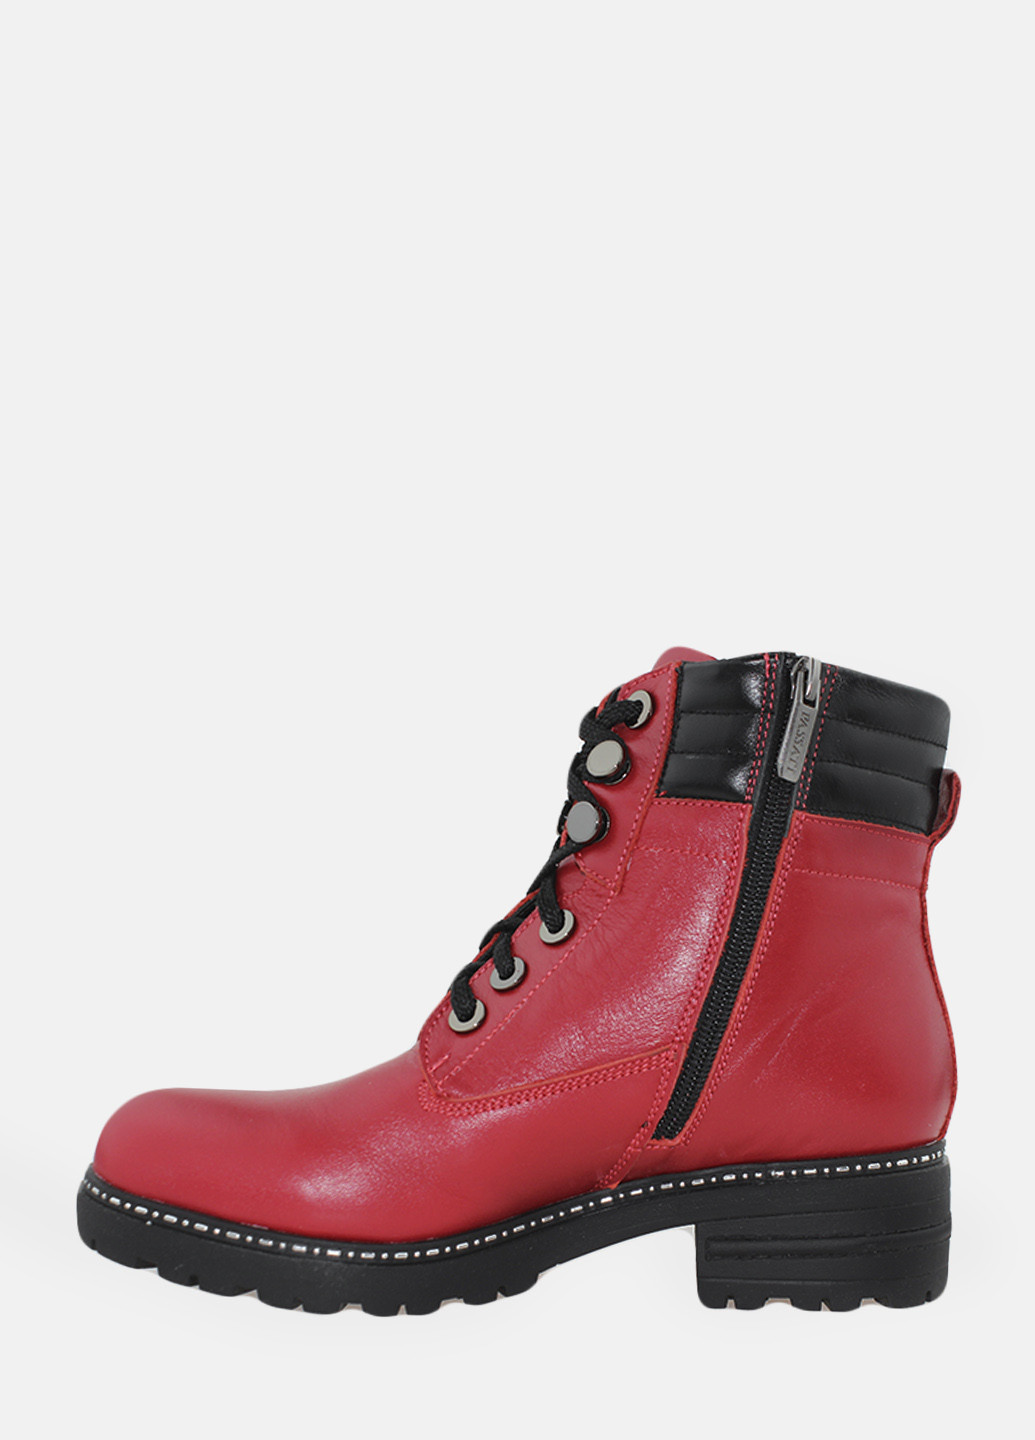 Зимние ботинки rp705-5 красный Passati